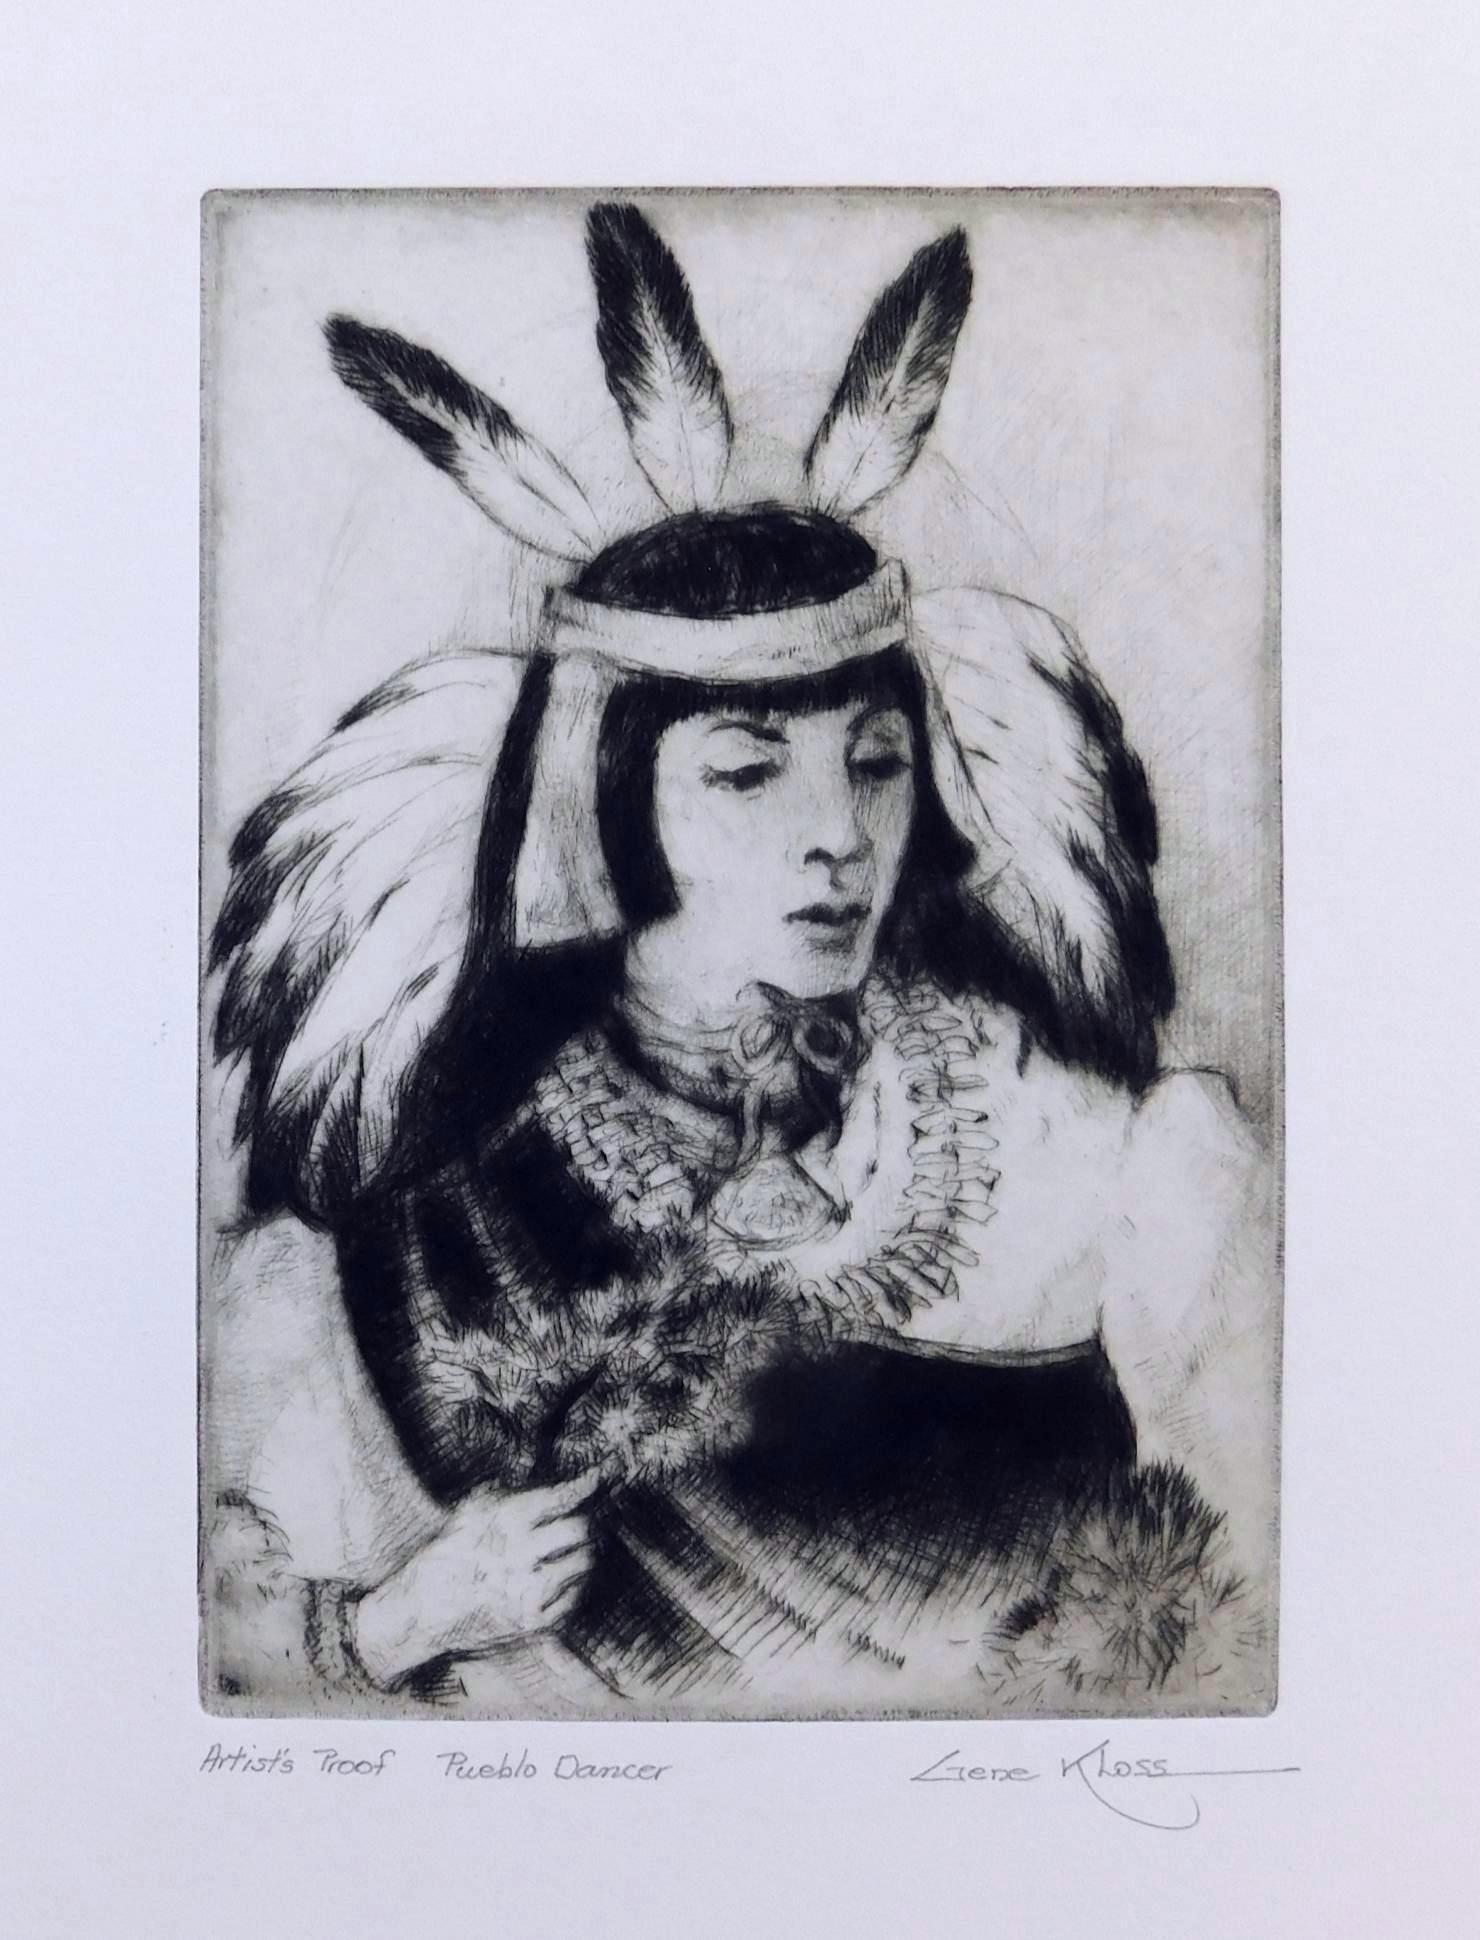 Gravure à l'eau-forte de Gene Kloss, 1982 - "Pueblo Dancer" (danseuse)